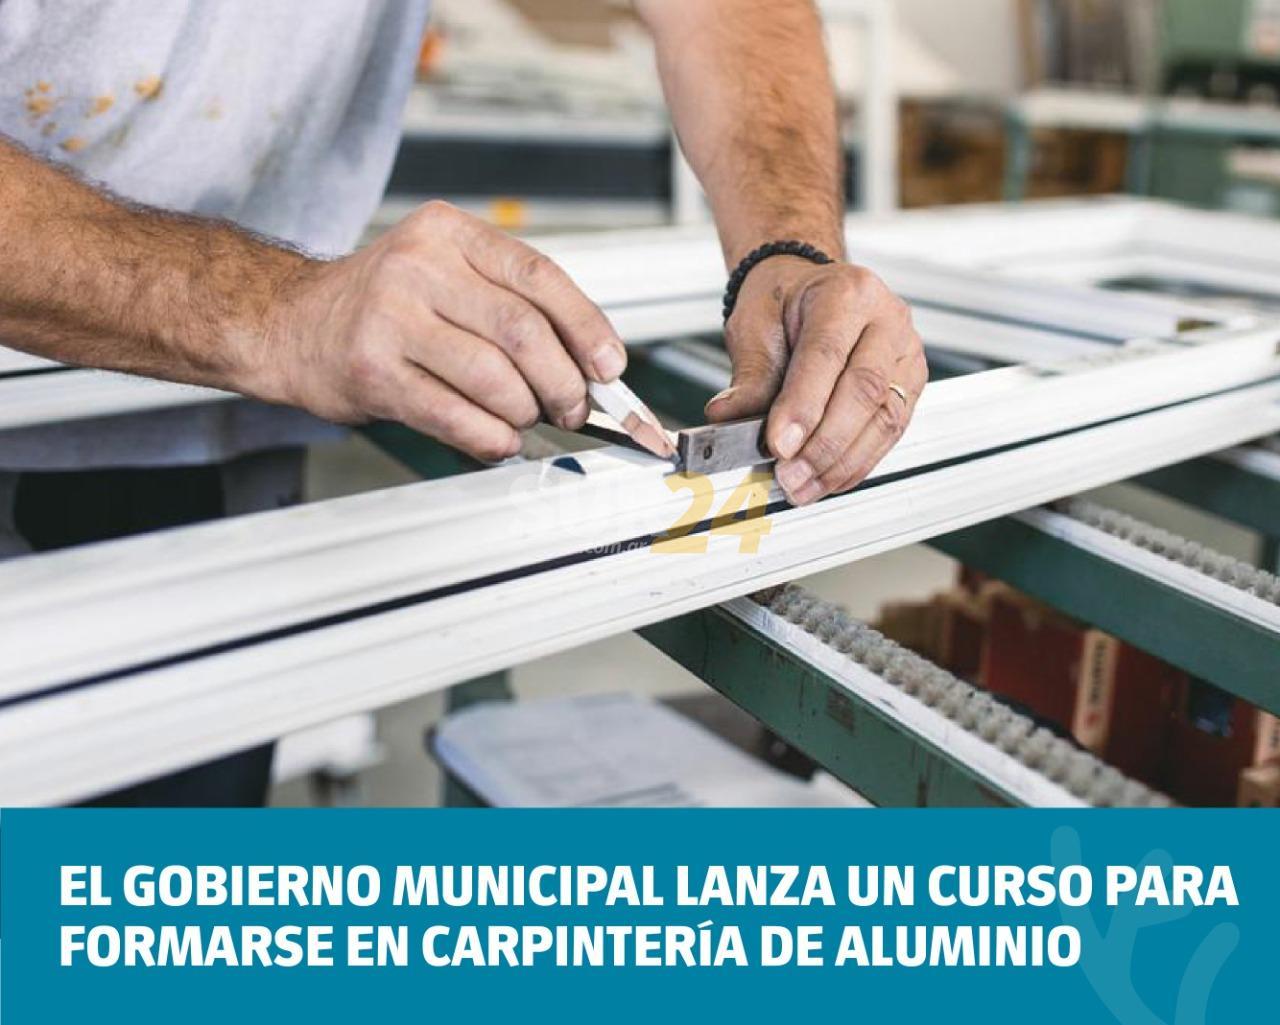 El Gobierno Municipal lanza un curso para formarse en carpintería de aluminio